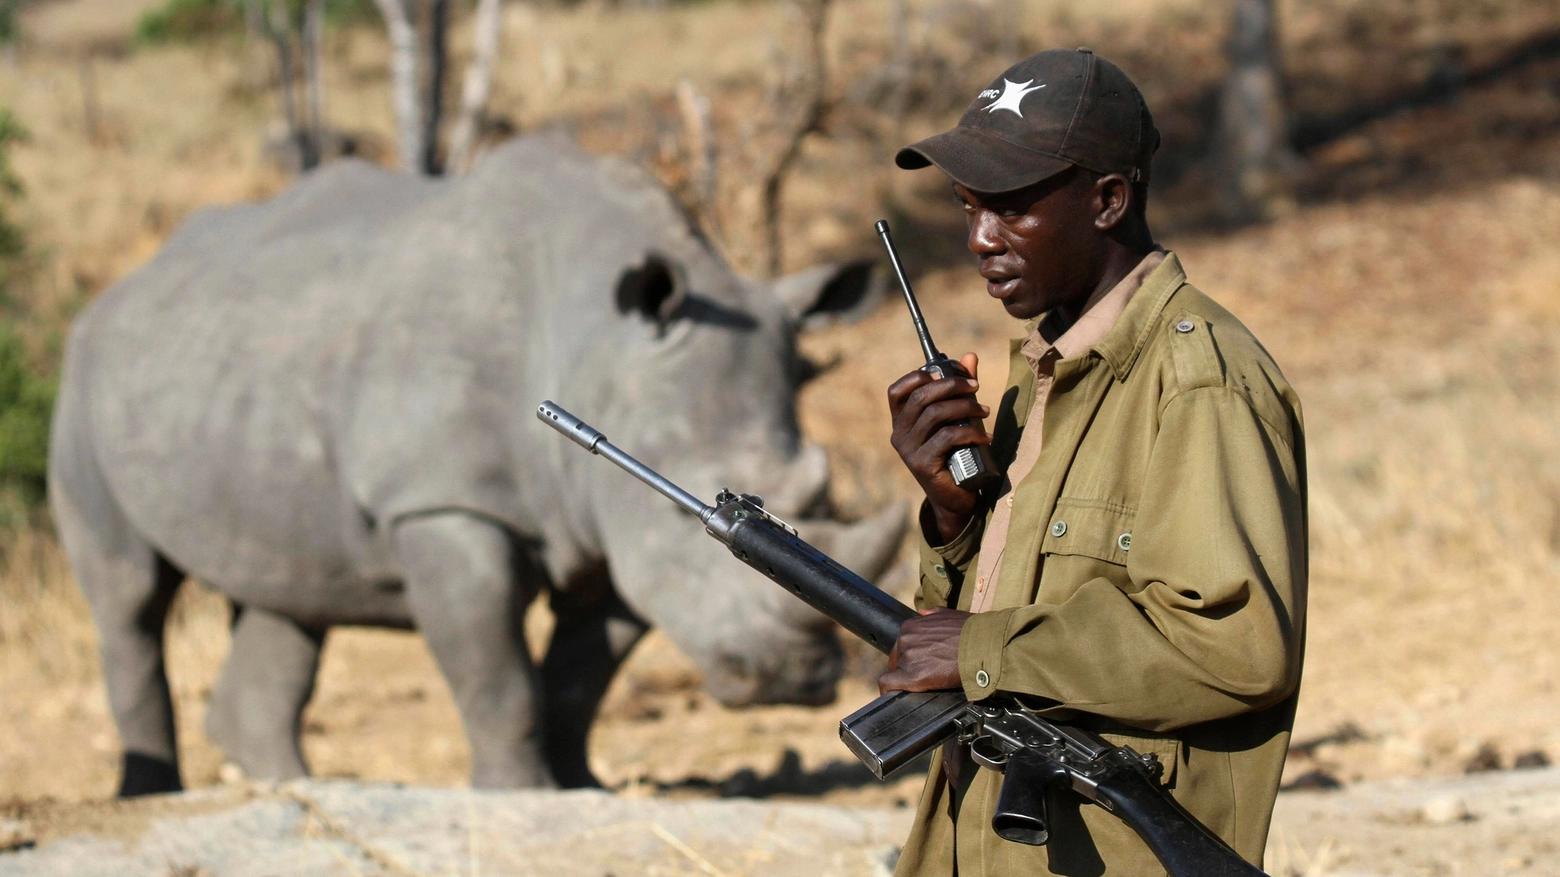 Rinoceronte bianco vegliato da un Ranger in Africa